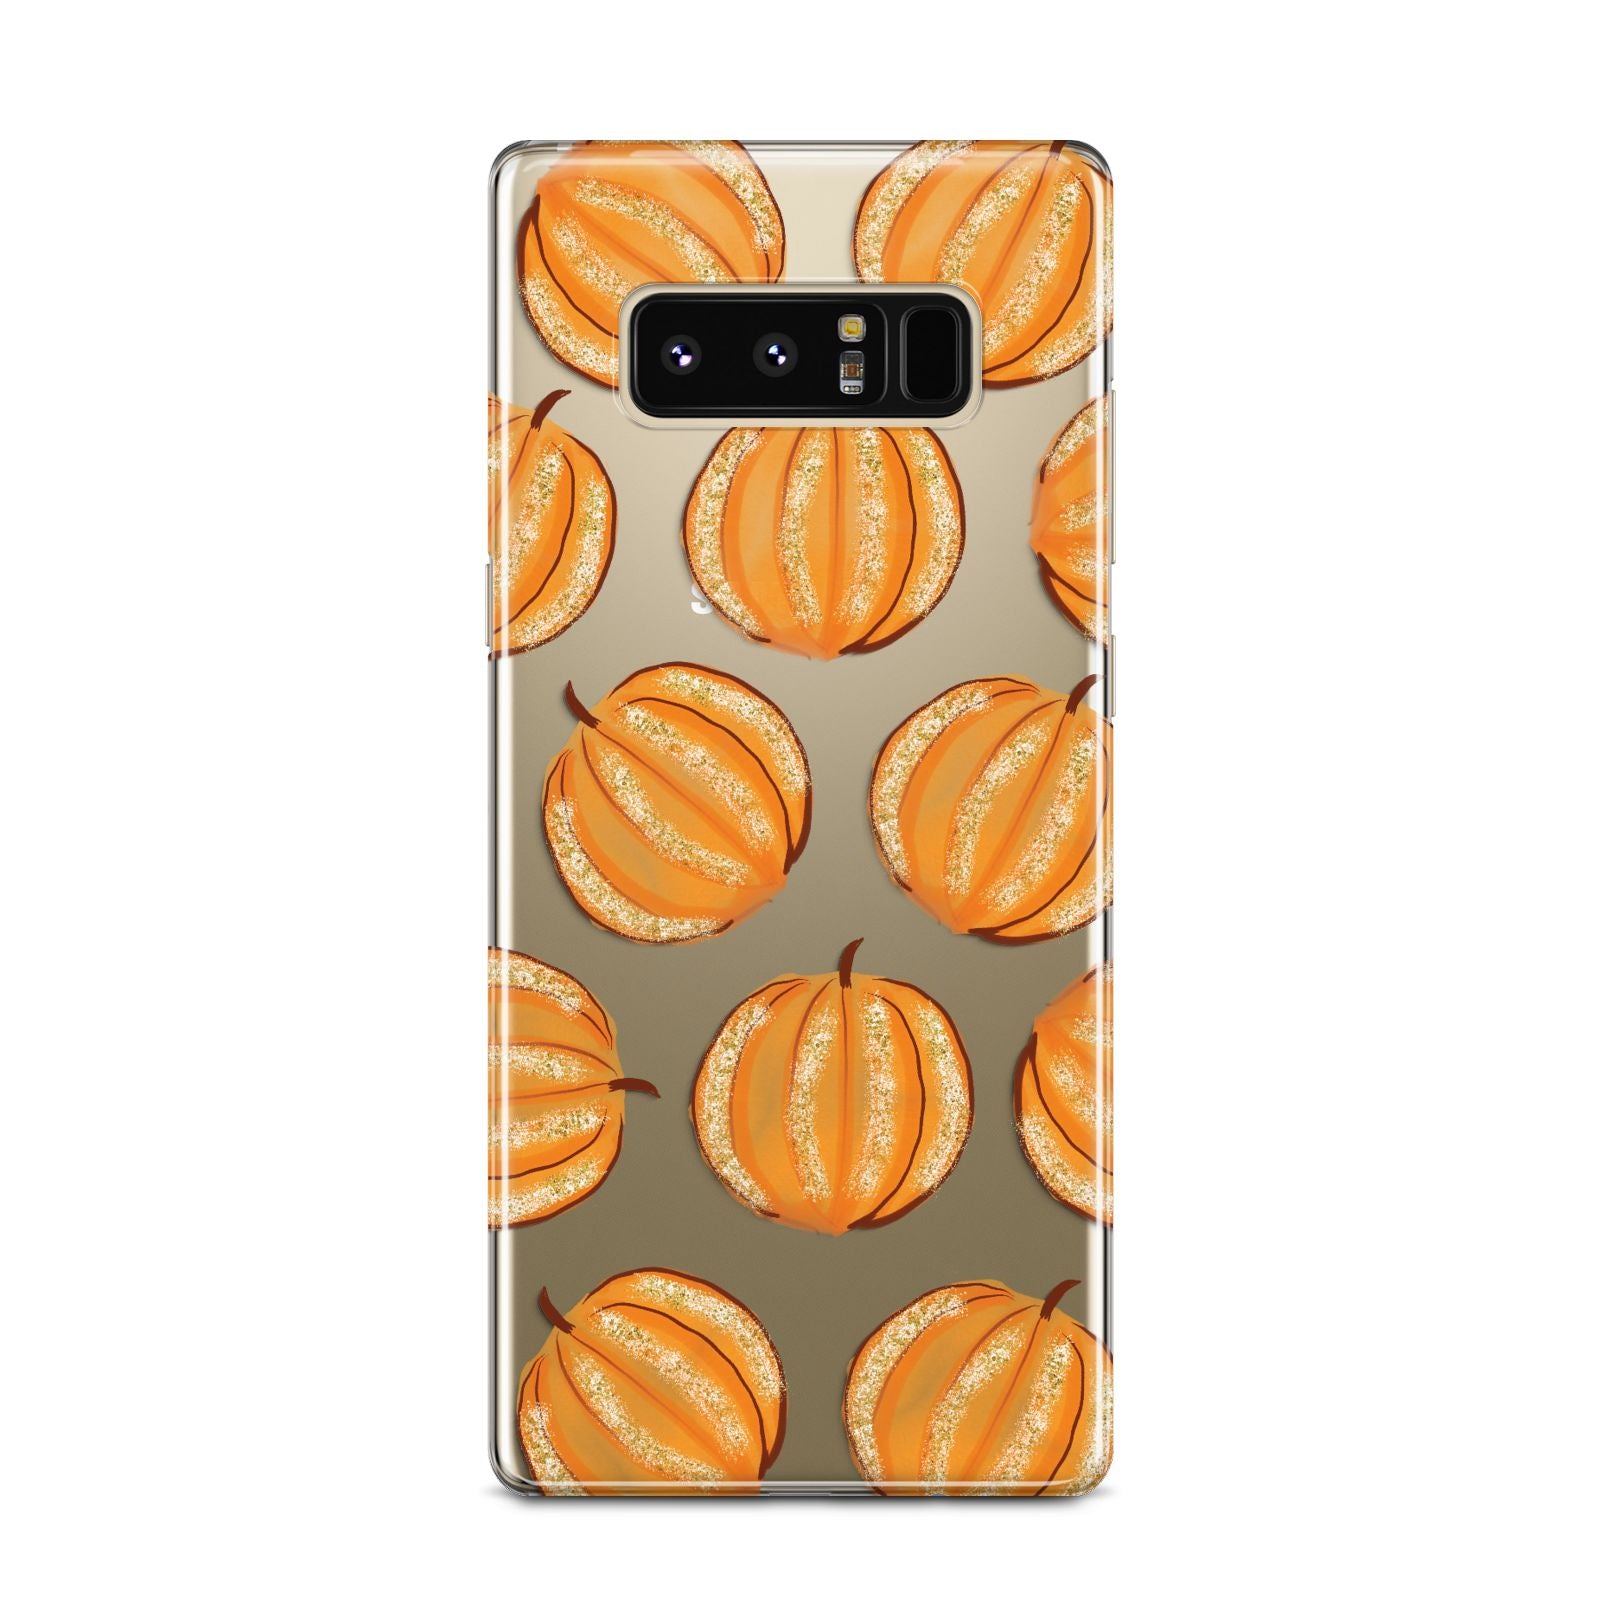 Pumpkin Halloween Samsung Galaxy Note 8 Case